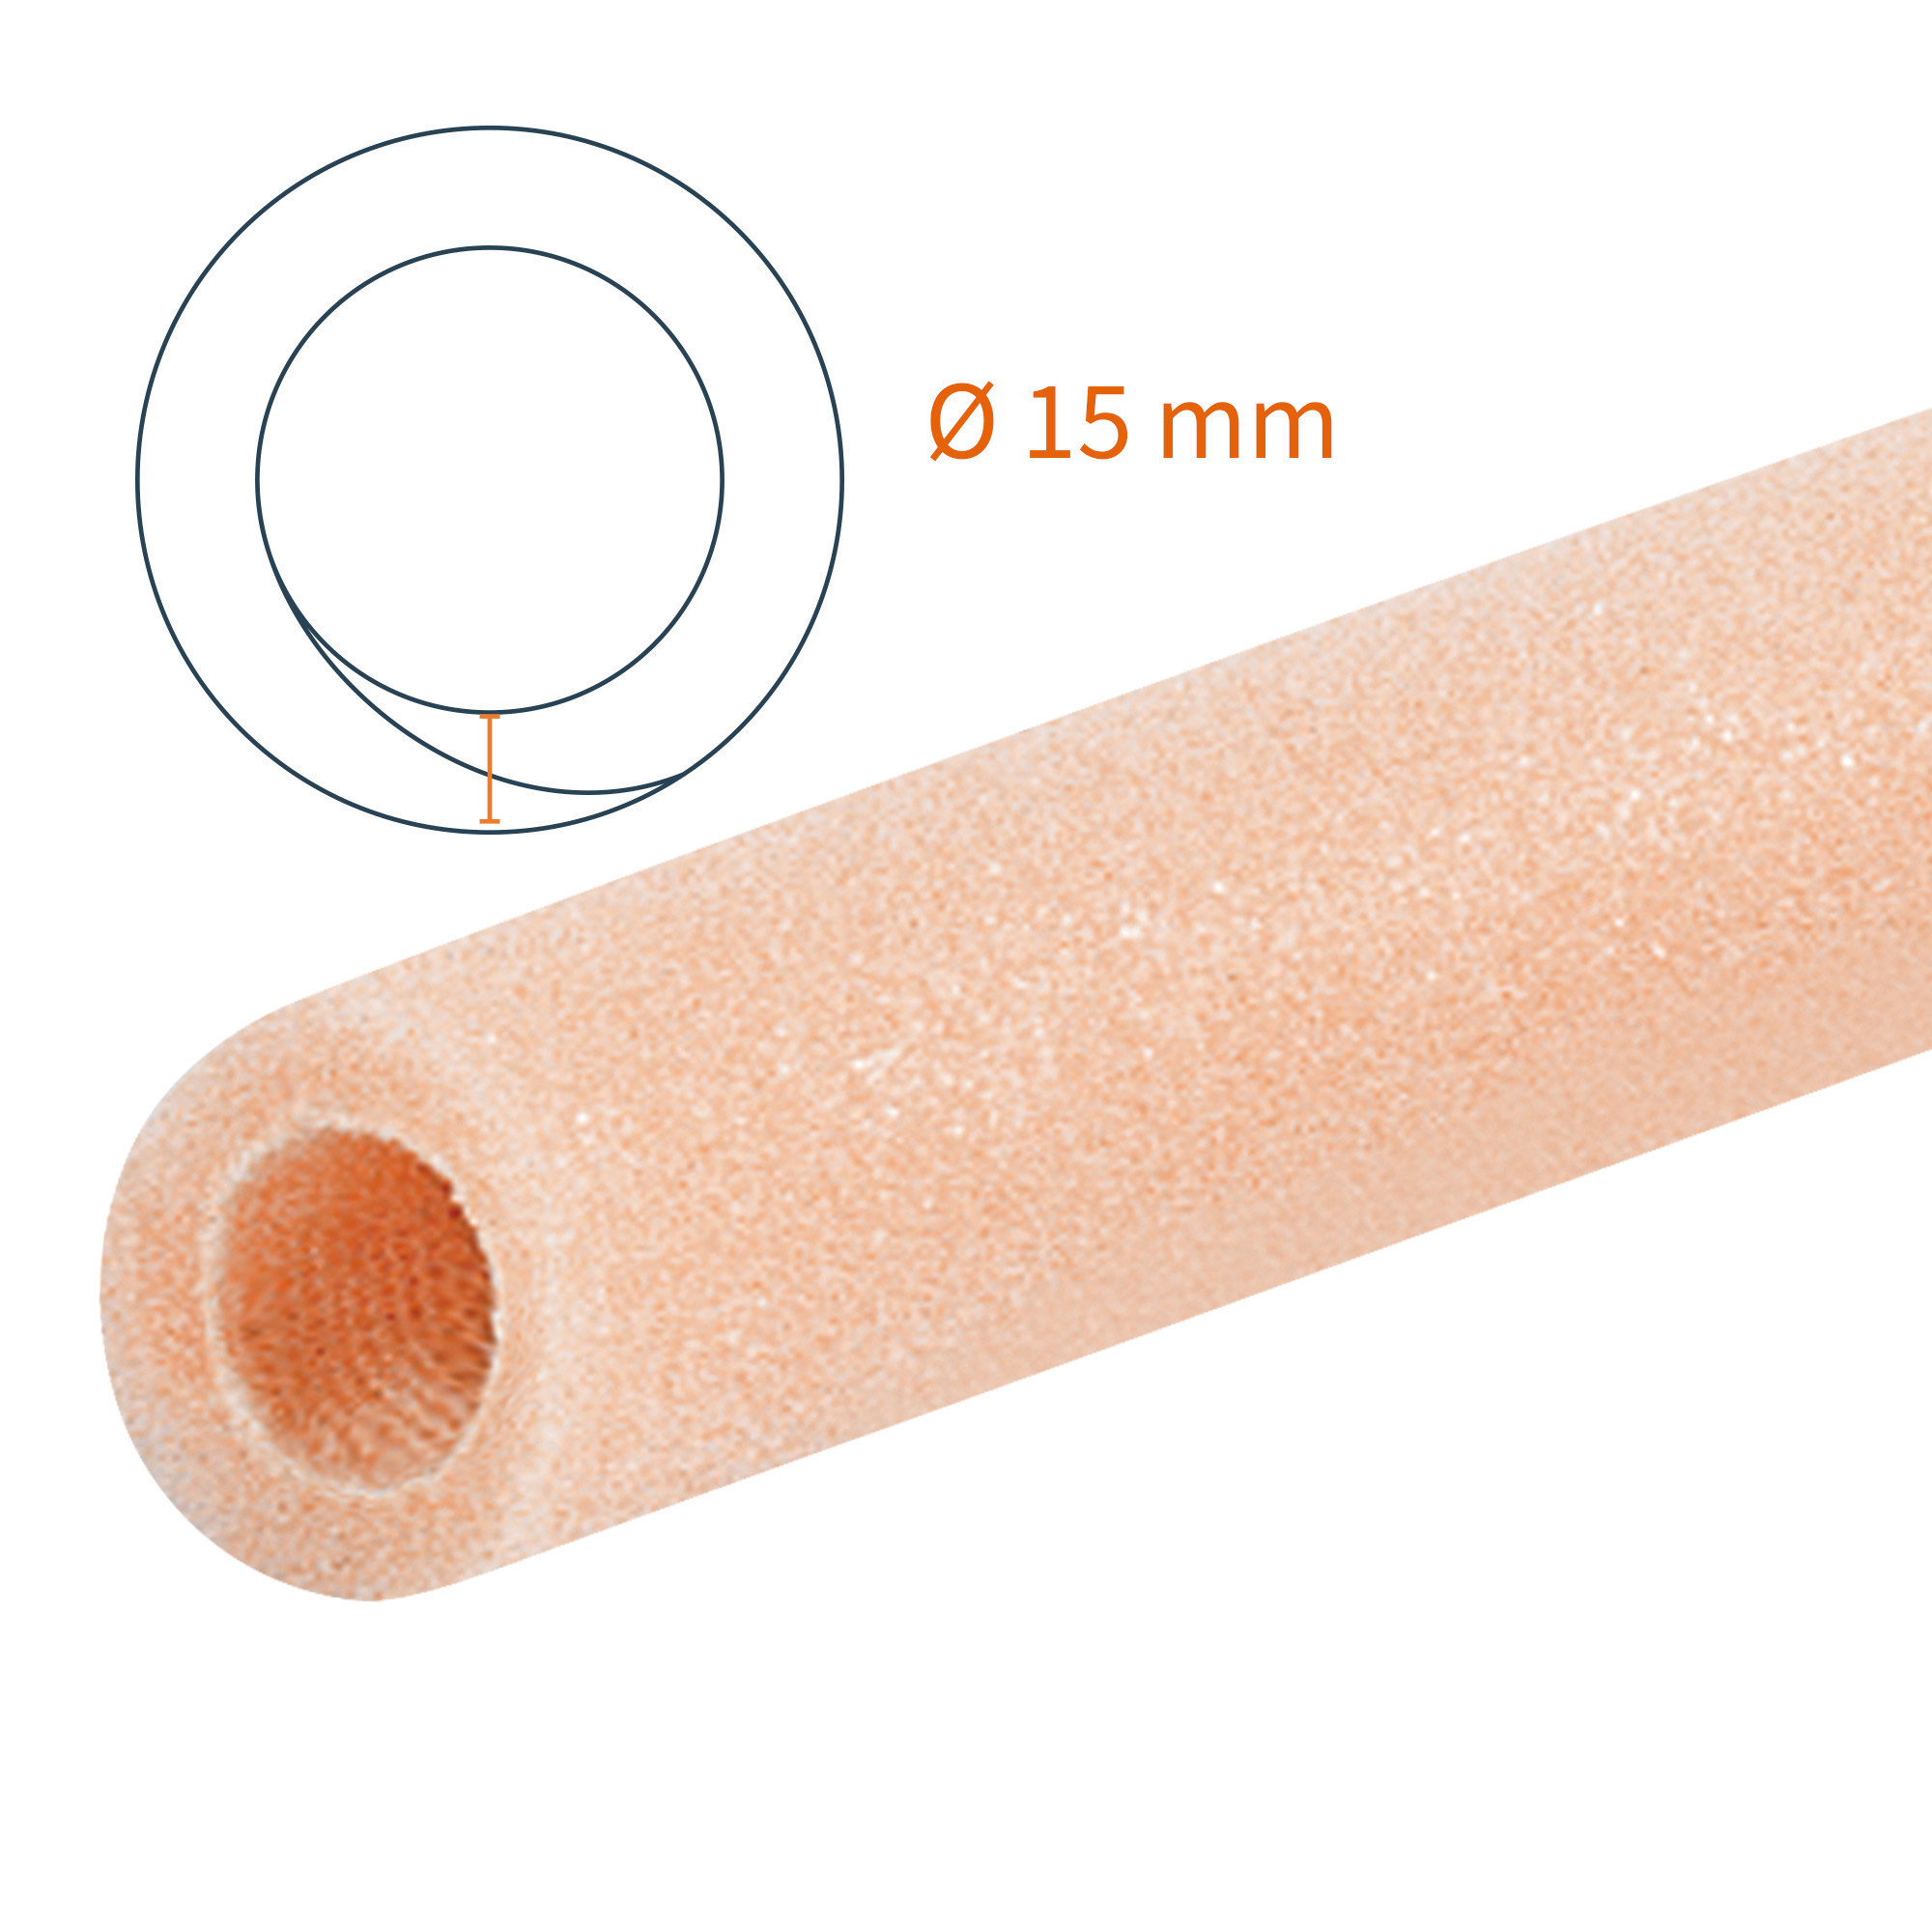 Protezione tubolare Tubifoam 15 mm A 12 pz